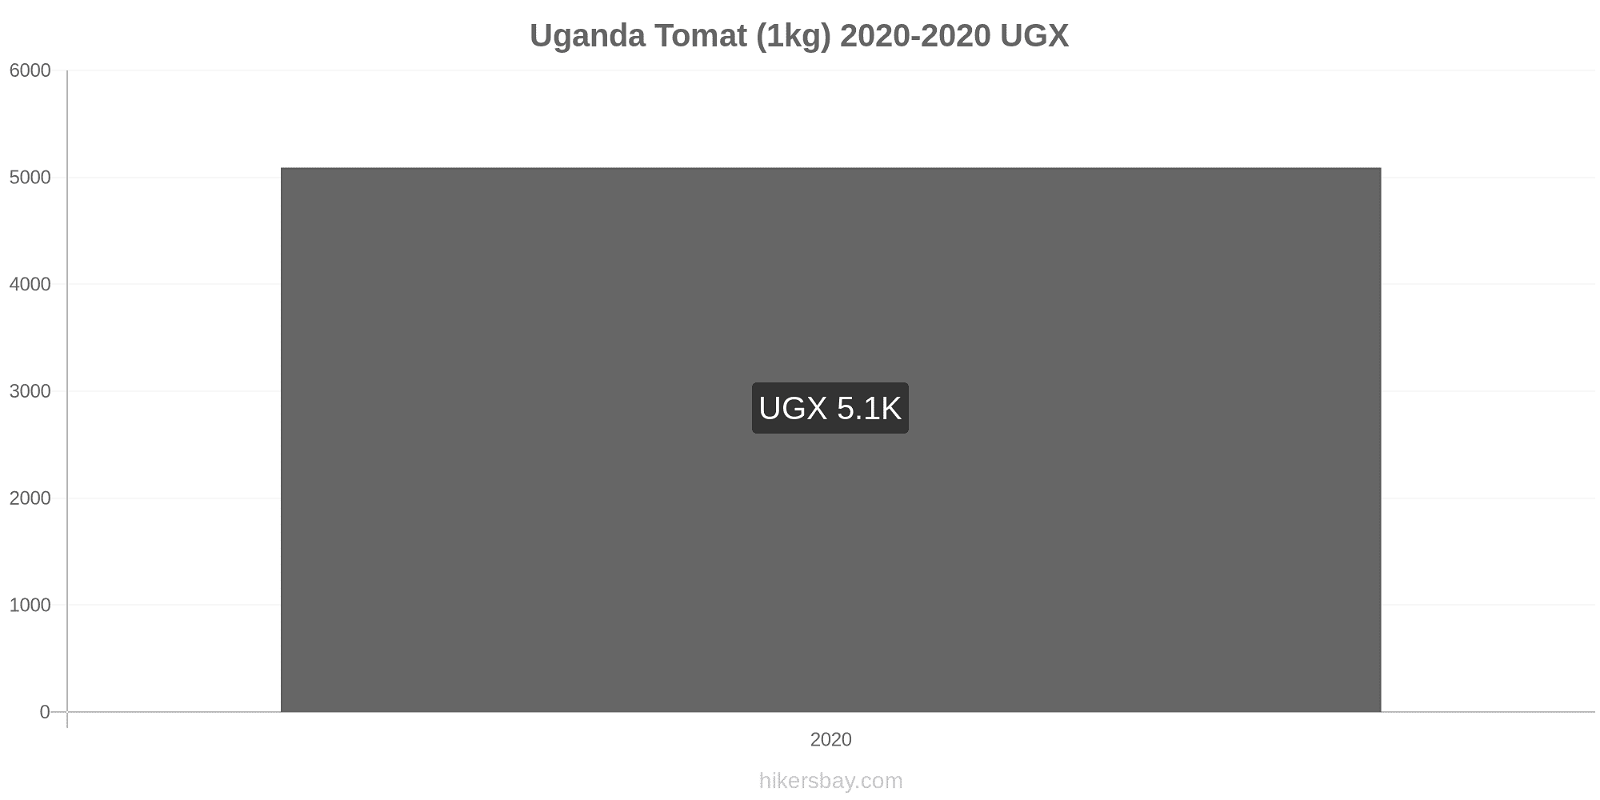 Uganda prisændringer Tomat (1kg) hikersbay.com